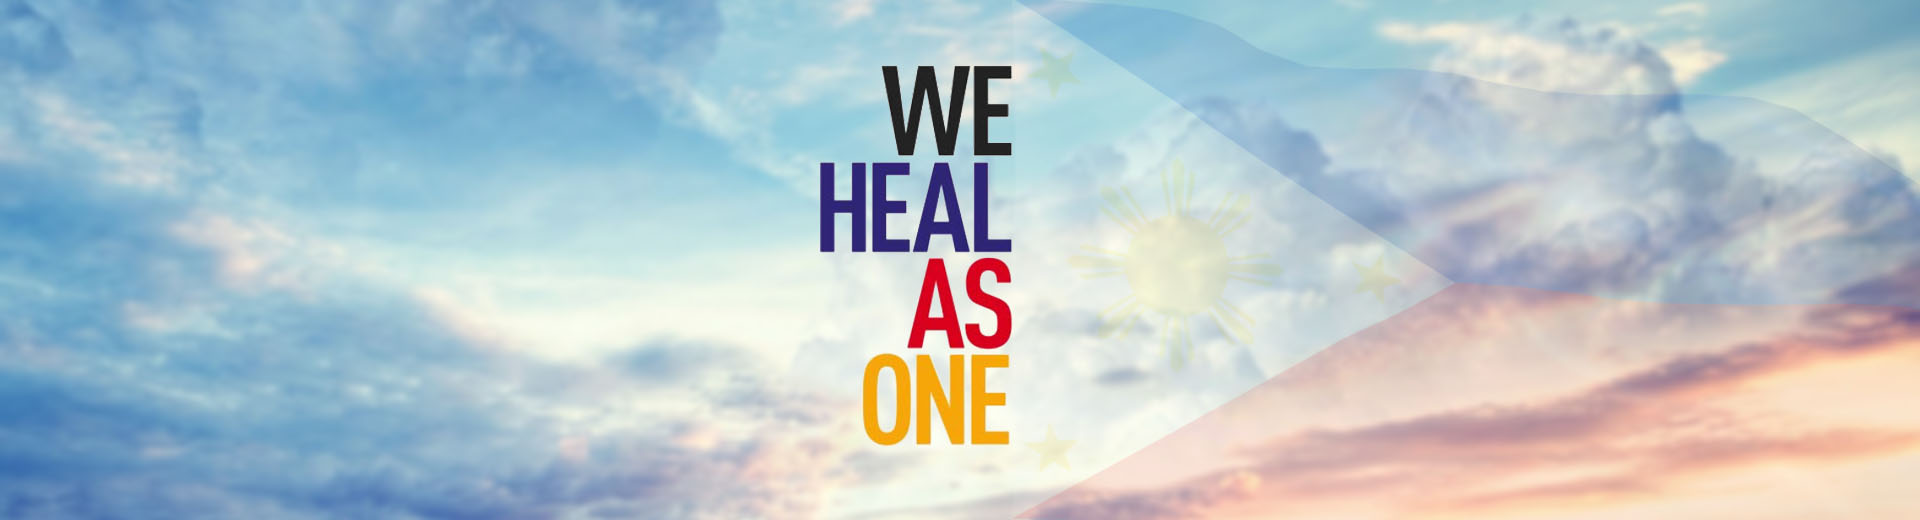 ._01-we-heal-as-one.jpg